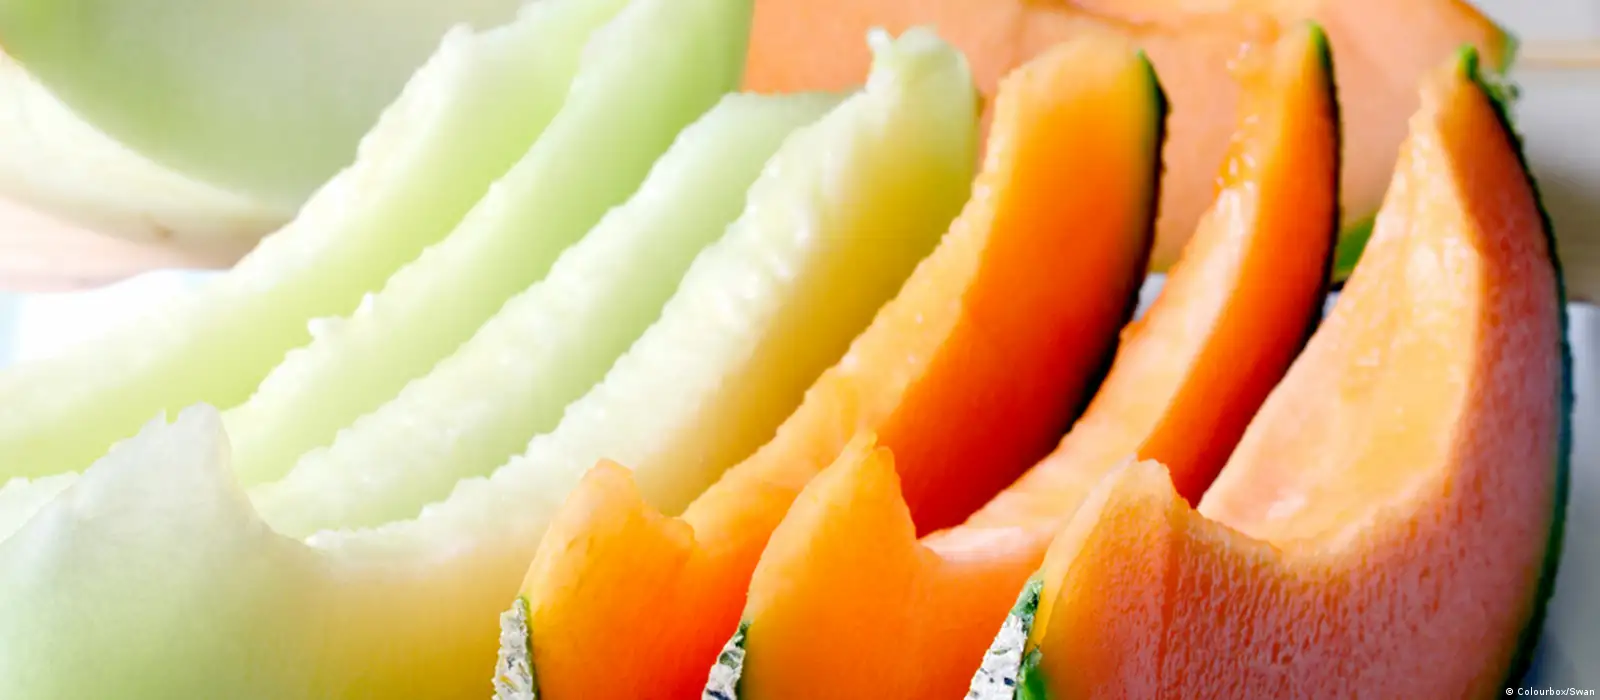 الشمام فاكهة غنية بالمغذيات.. يساعد على إنقاص الوزن ويحسن صحة القلب 9